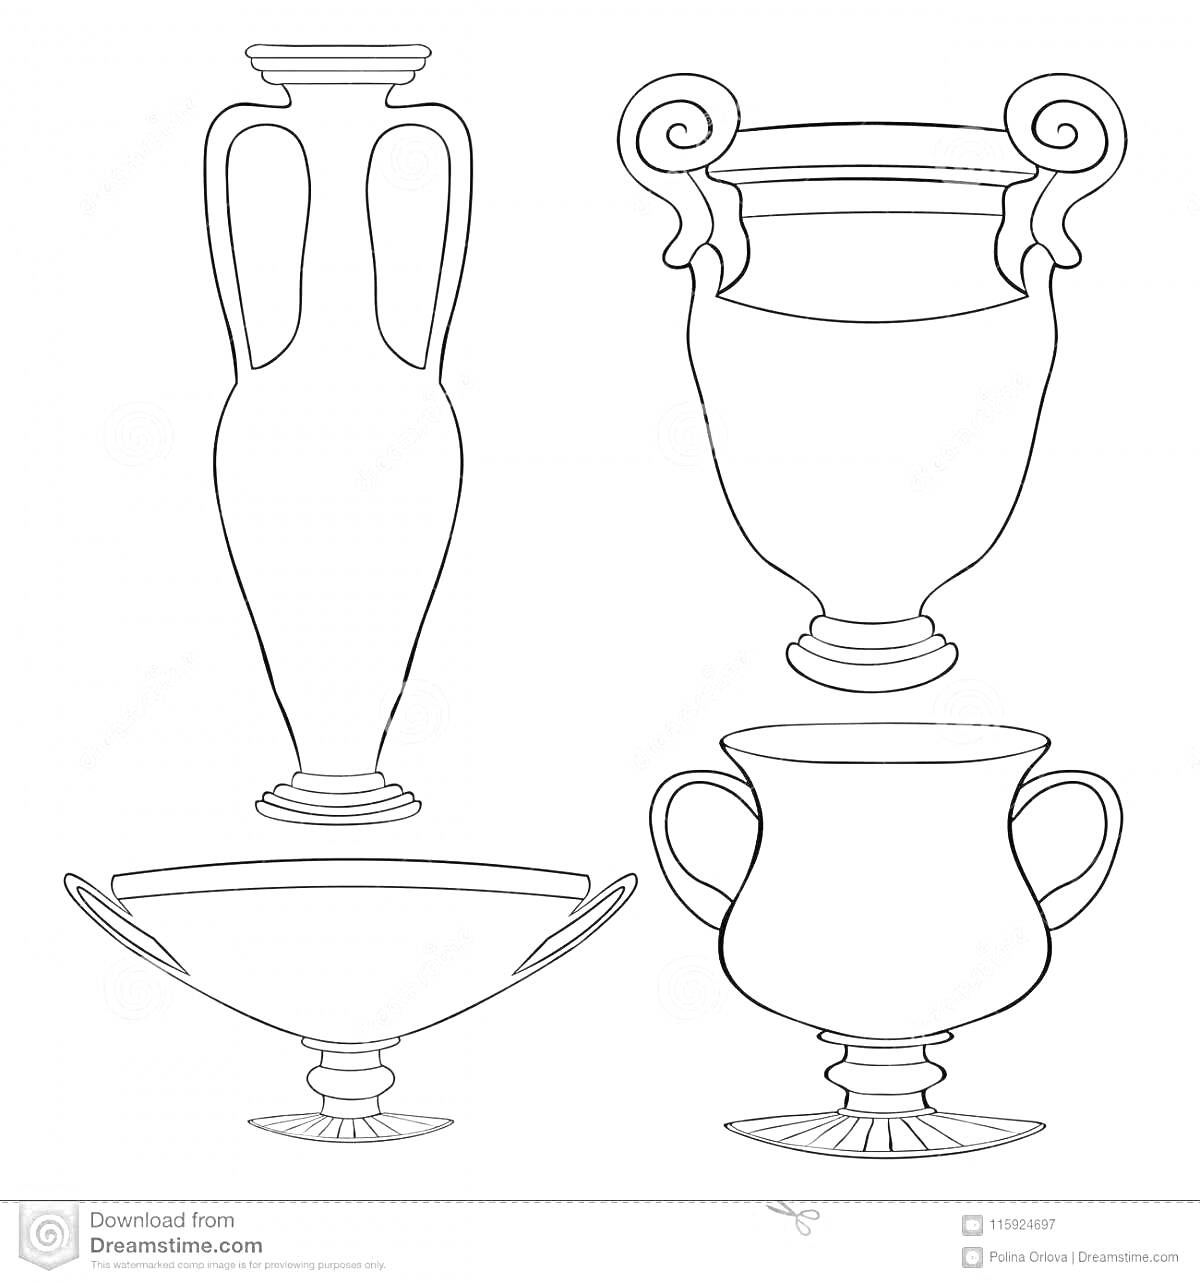 Раскраска Четыре греческие вазы различных форм с ручками и без